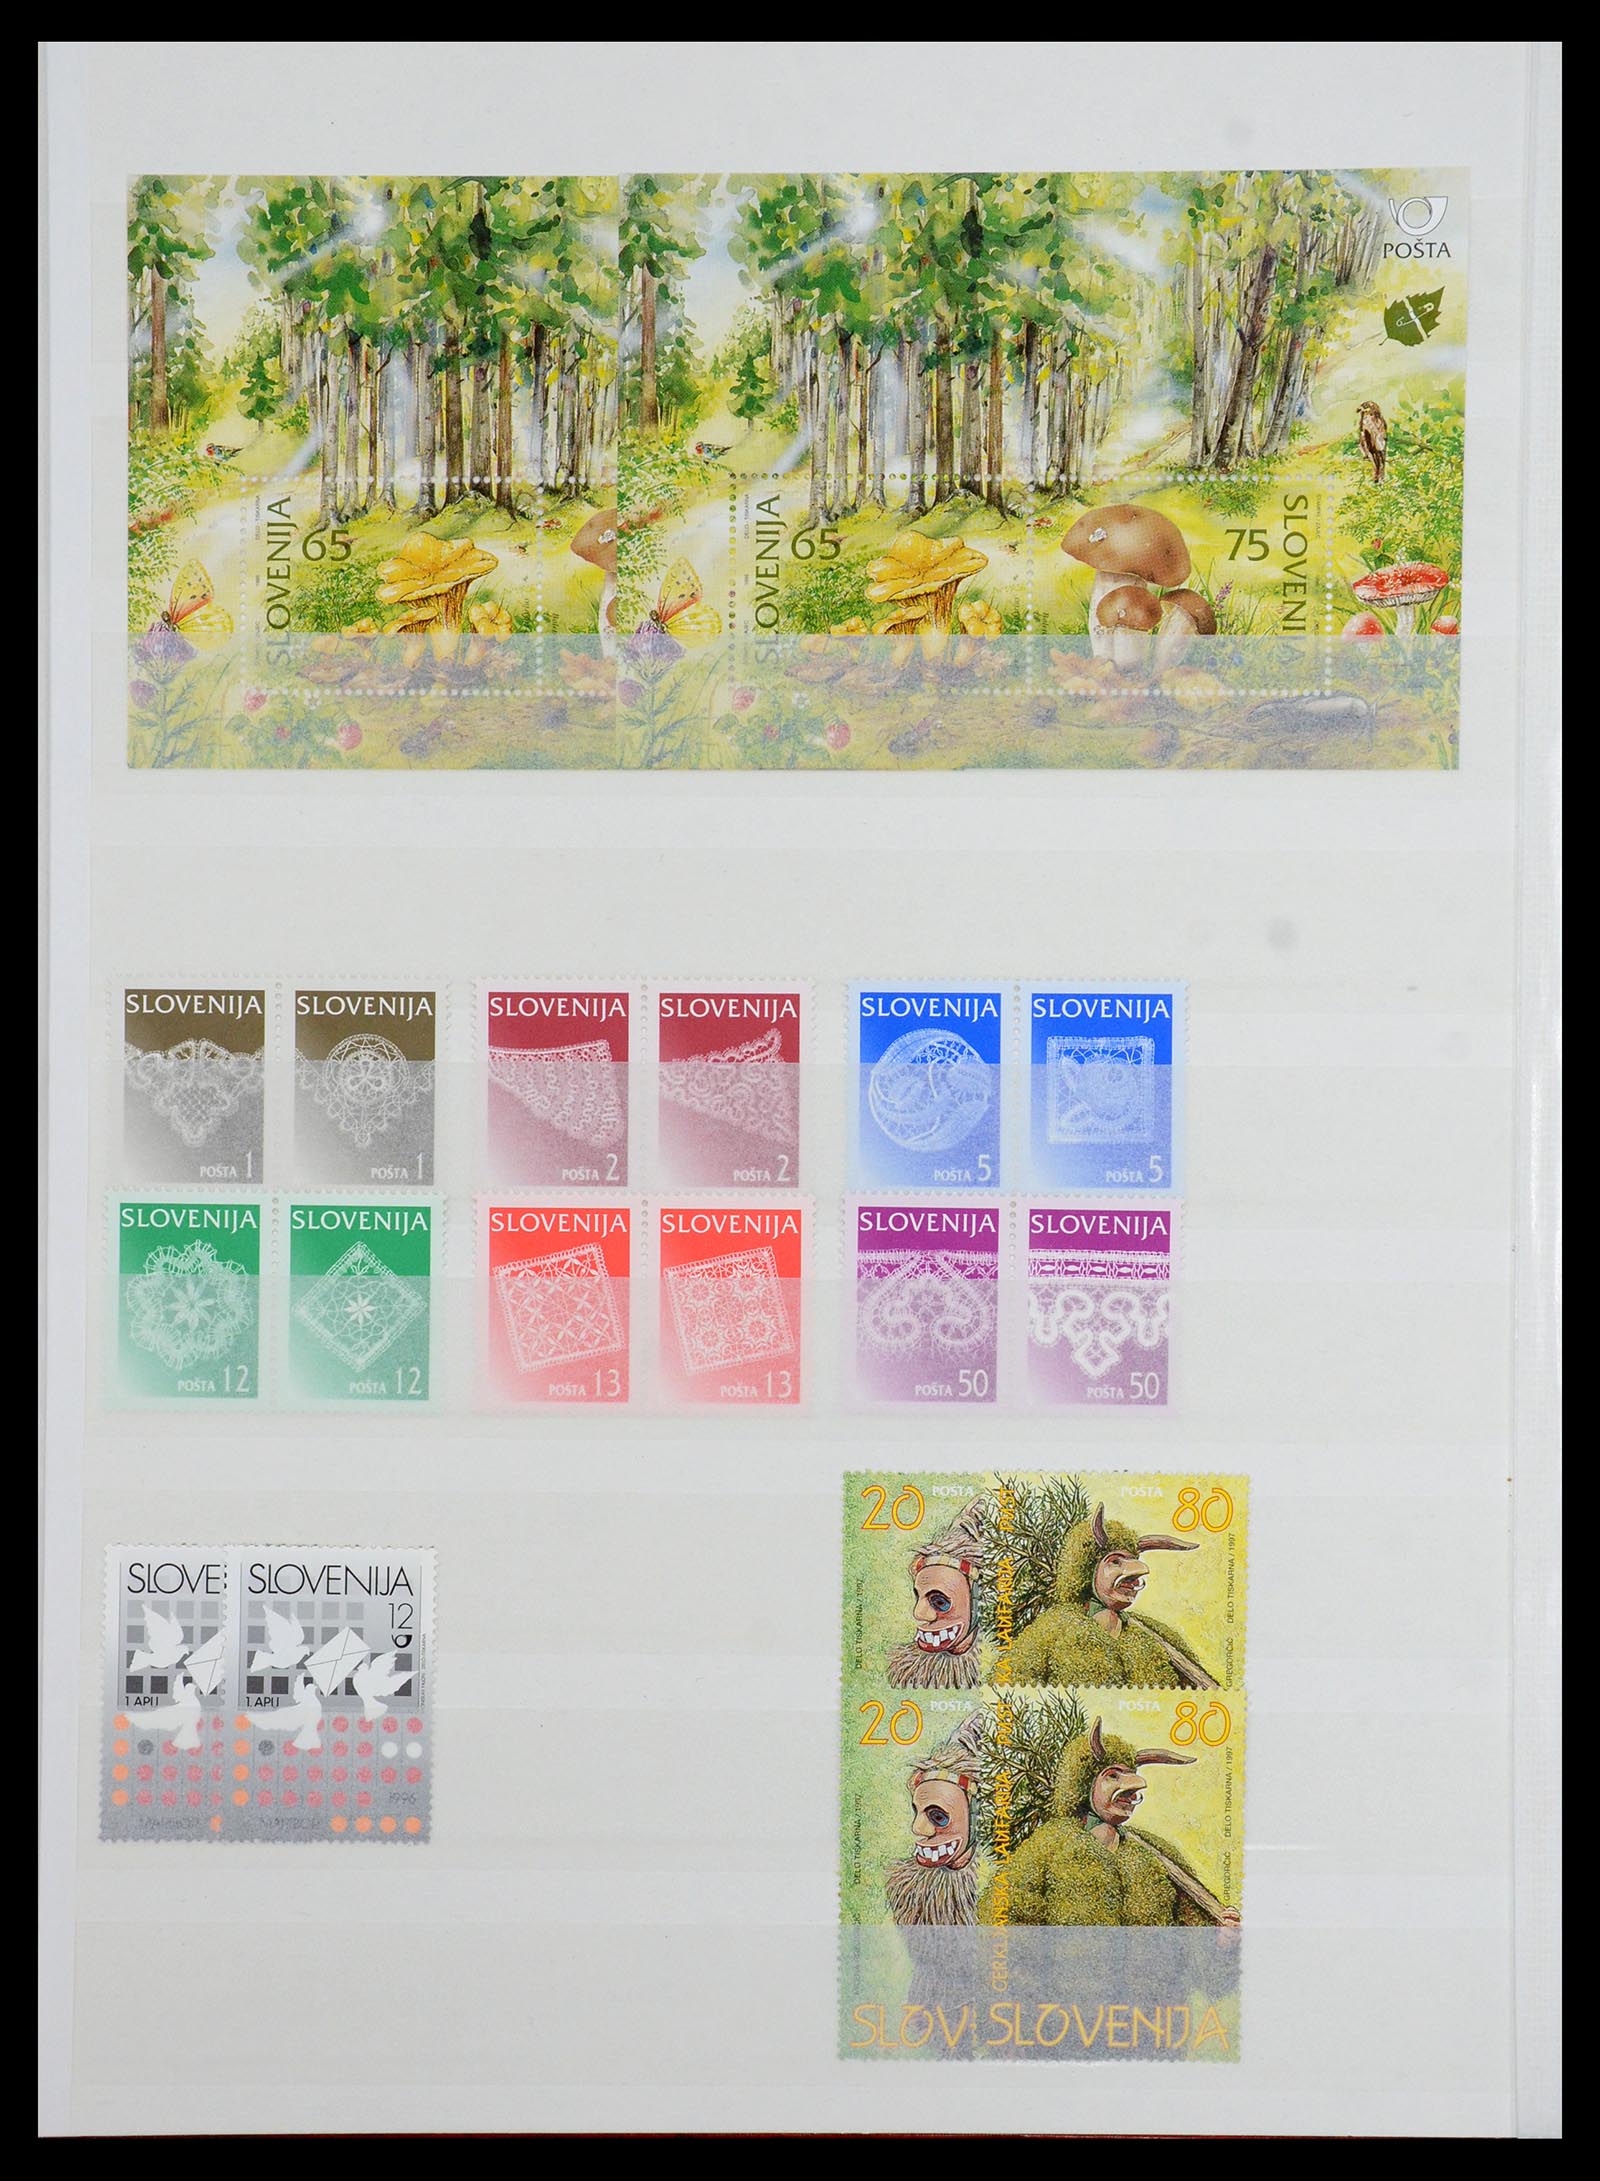 36461 014 - Stamp collection 36461 Slovenia, Croatia and Bosnia-Herzegovina MNH 1991